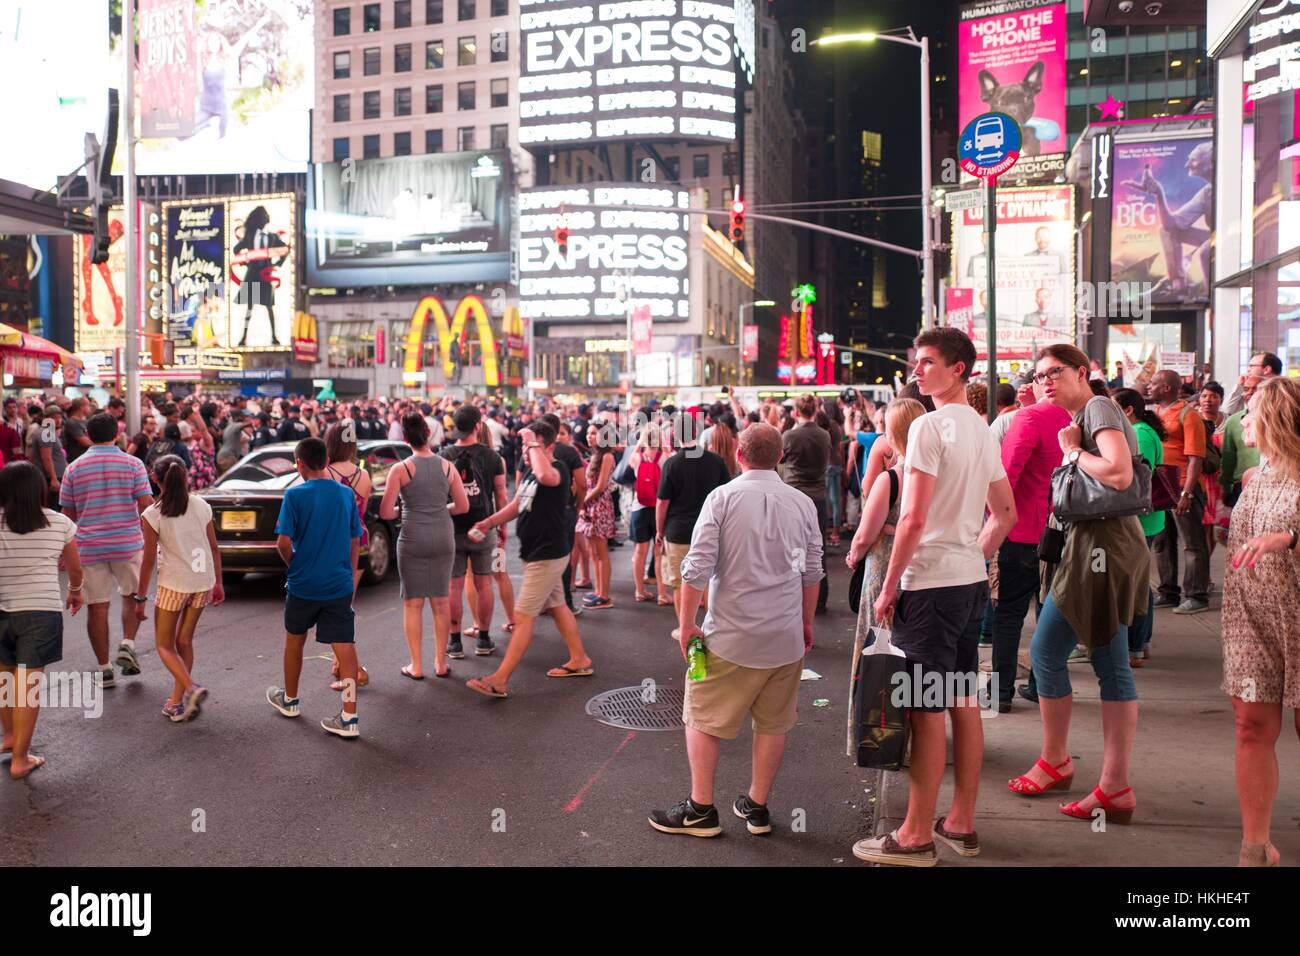 Bei einem schwarzen lebt Angelegenheit Protest in New York Citys Absperren Times Square nach den Dreharbeiten Tod von Alton Sterling und Philando Kastilien, Aktivisten Verkehrs- und Platz gegen eine Linie des New York Police Department (NYPD) Polizei wie Touristen auf, New York City, New York, 7. Juli 2016 aussehen. Stockfoto